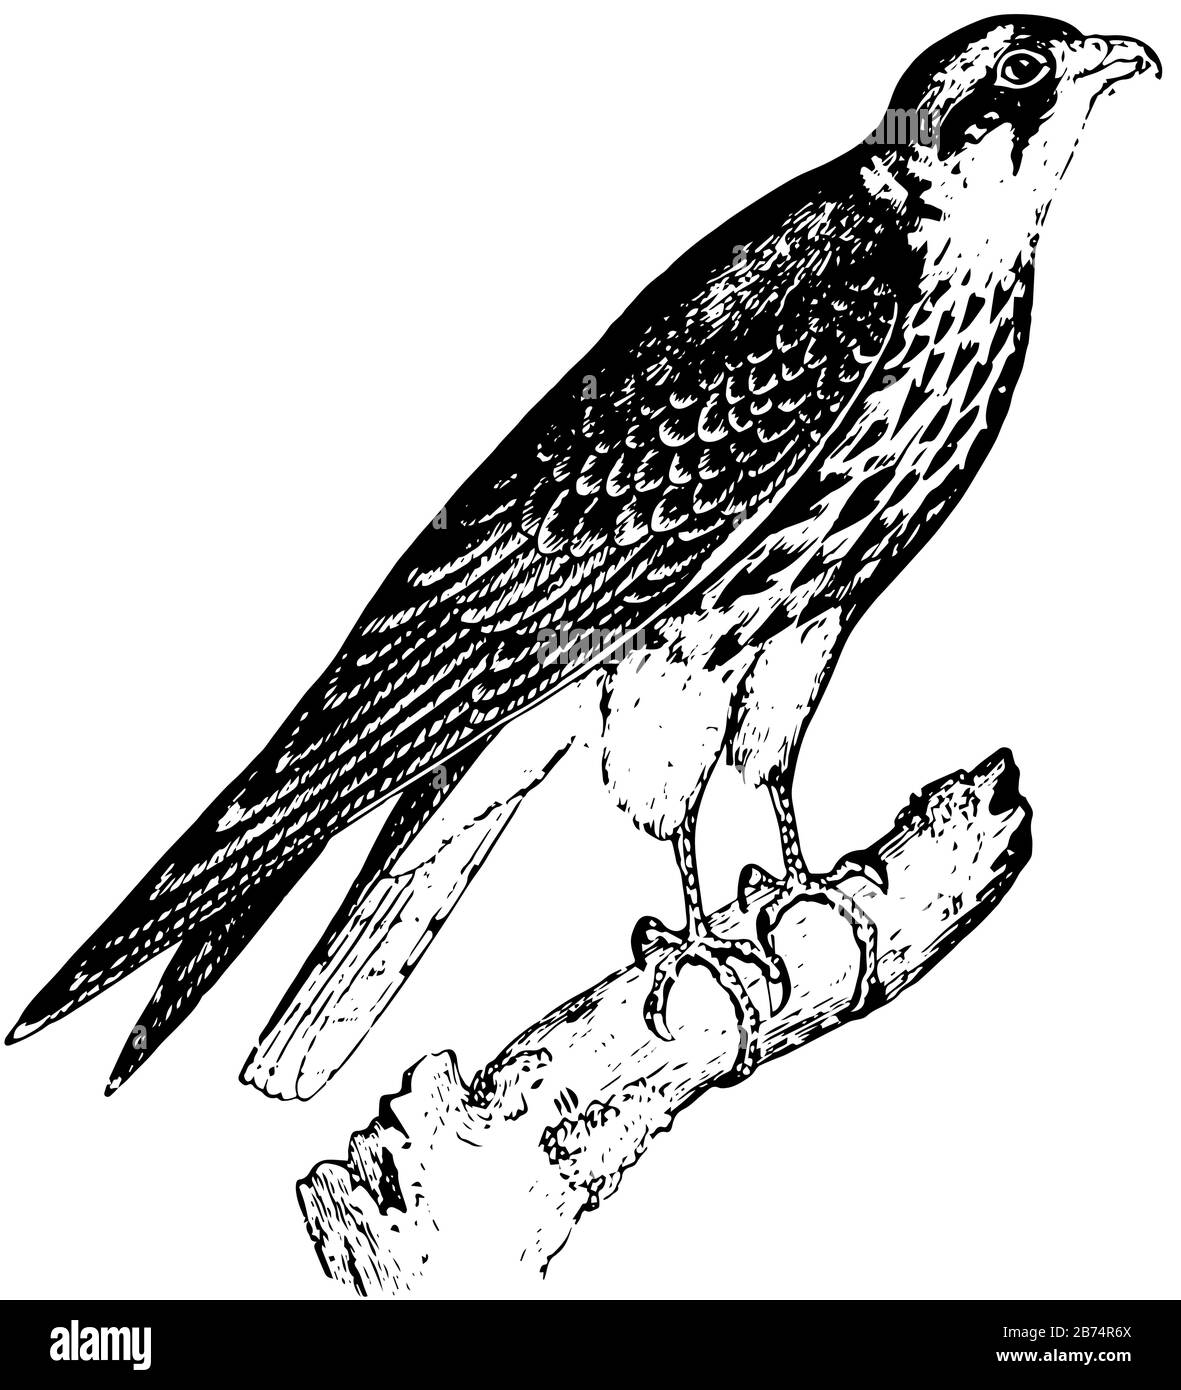 Hobby Falcon Con Con artigli affilati e visione penetrante, disegno linea vintage o illustrazione incisione. Illustrazione Vettoriale